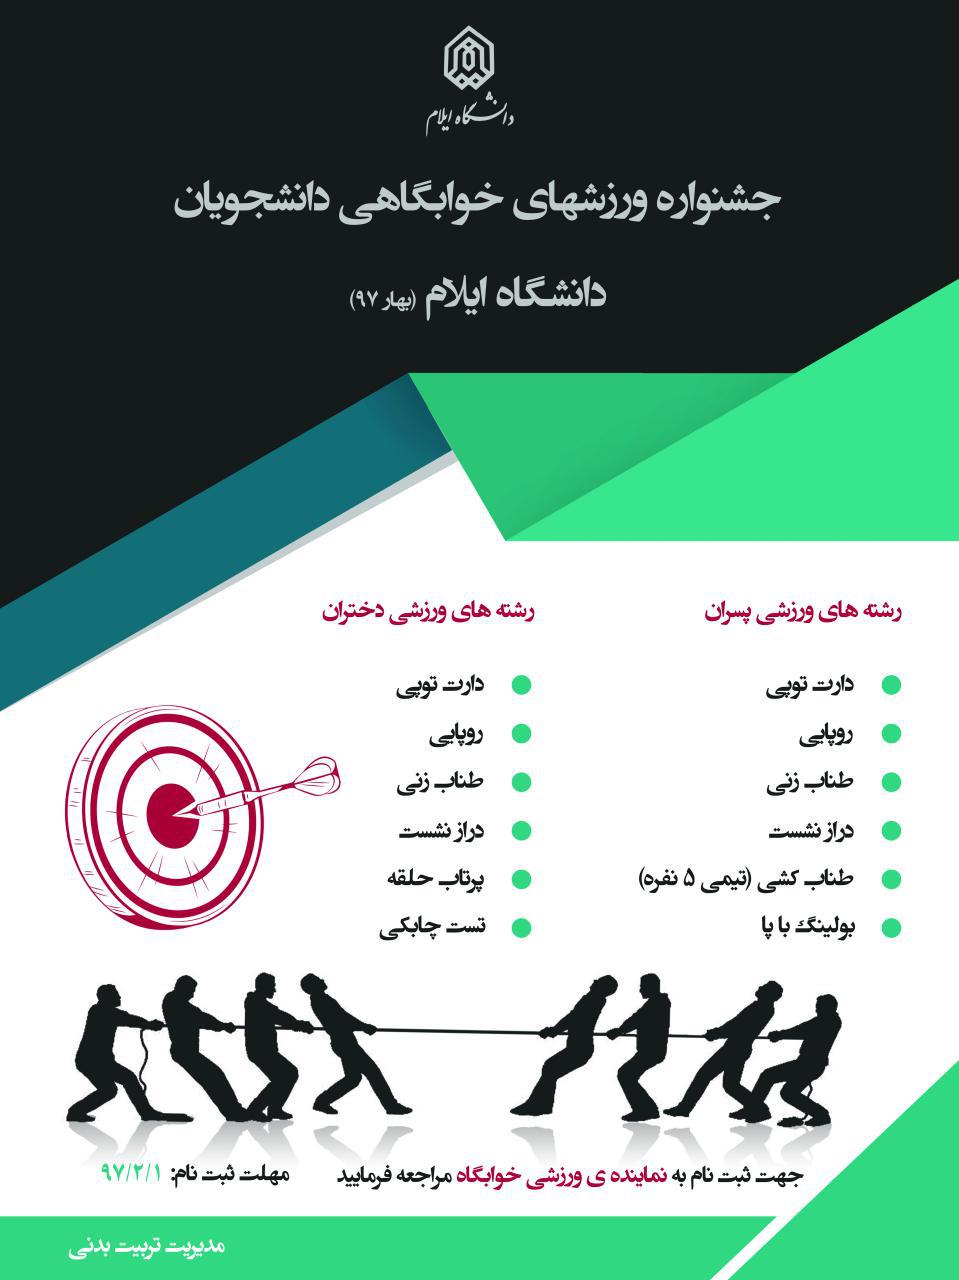 فراخوان جشنواره ورزش هاي خوابگاهي   و ورزش هاي همگاني دانشجويان دانشگاه (بهار 97)                                                                                 